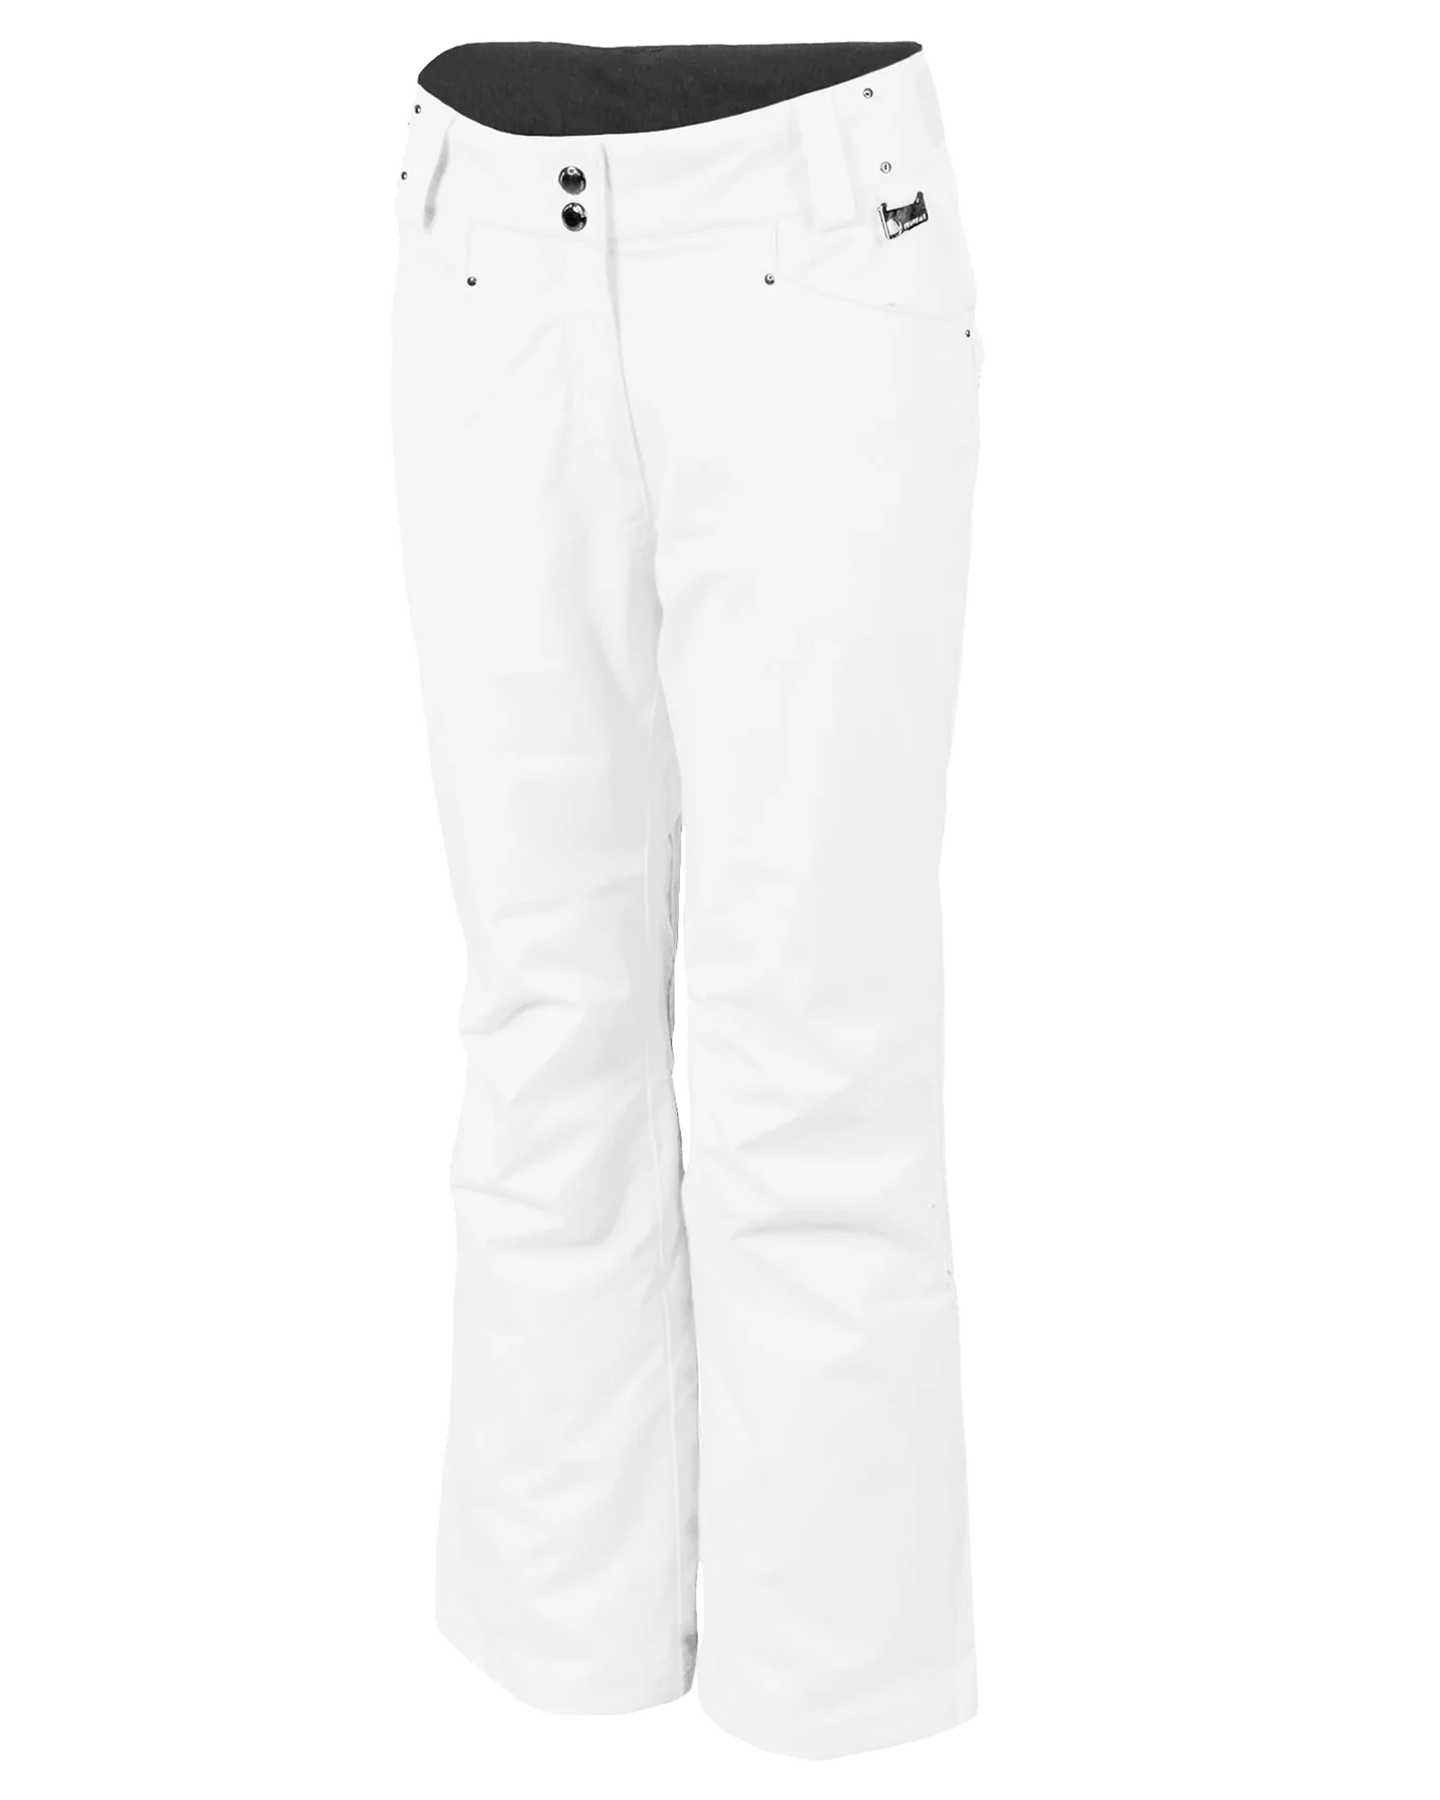 Karbon Pearl II Diamond Tech Women's Snow Pants - Arctic White Women's Snow Pants - Trojan Wake Ski Snow